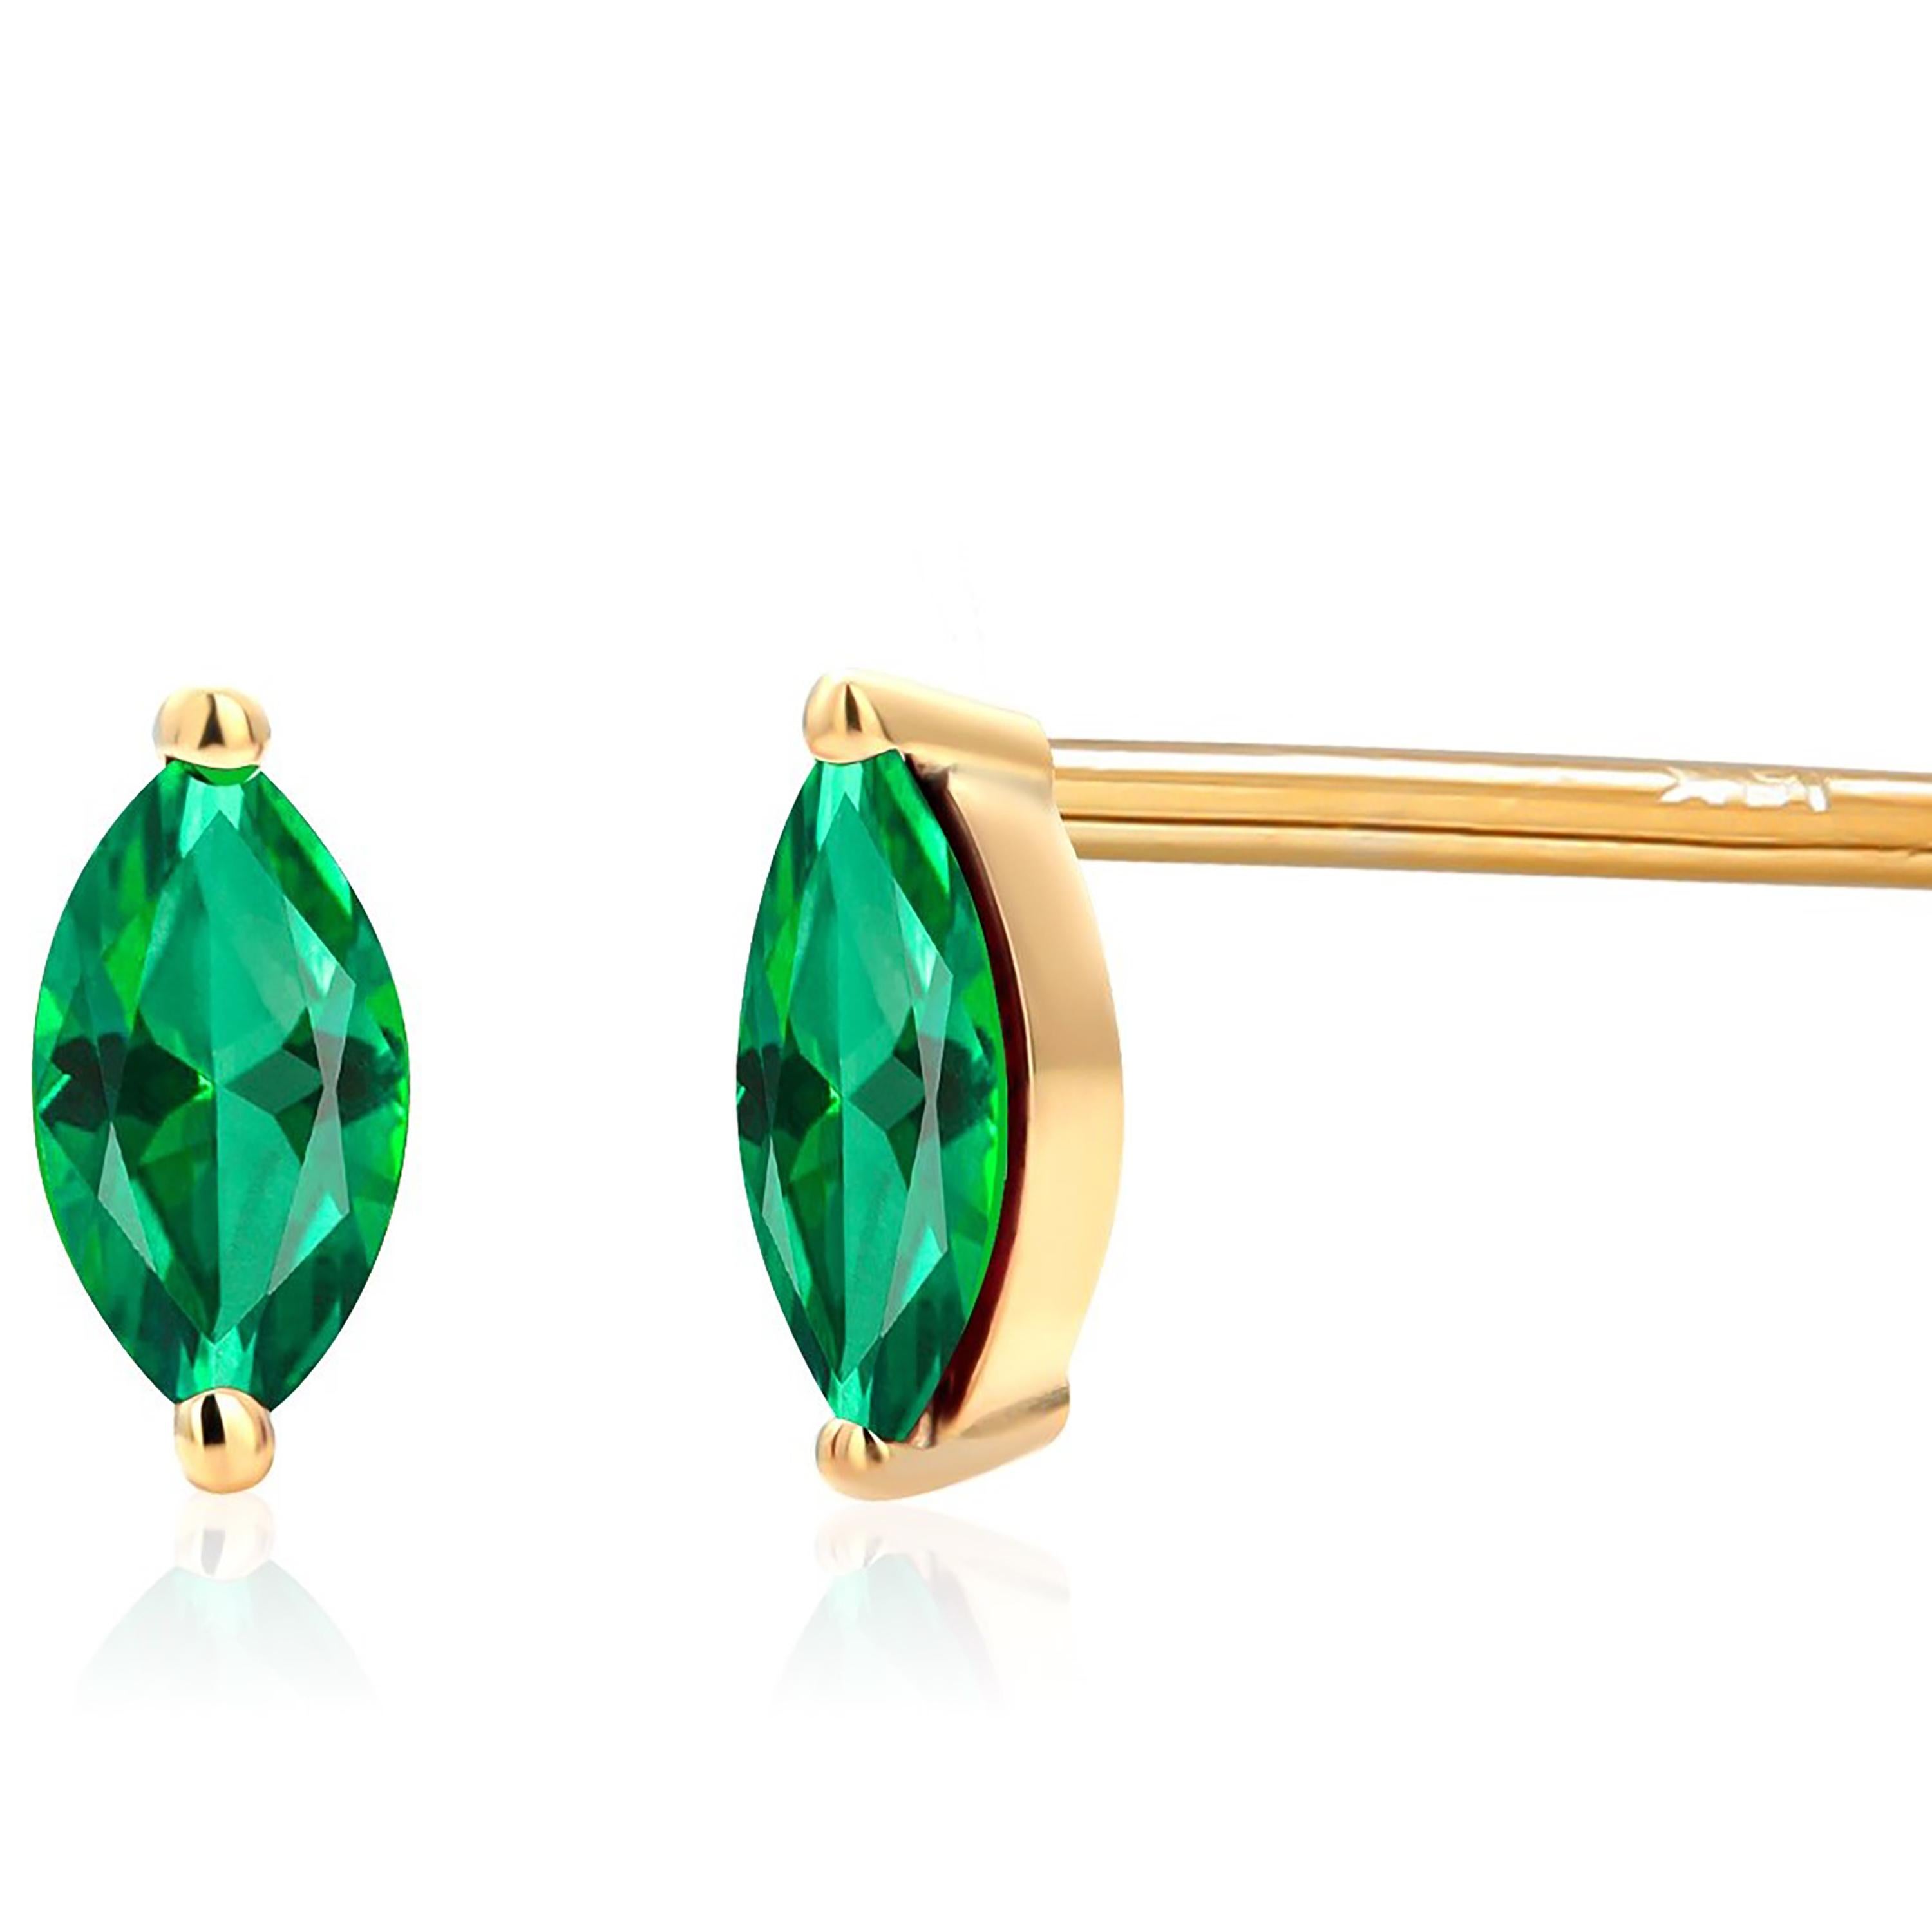 Diese eleganten Ohrringe bestehen aus einem Paar exquisiter Marquise-Smaragde mit einem Gewicht von je 0,25 Karat, die zart in 14-karätiges Gelbgold gefasst sind. 
Ihre zierliche Größe, die nur 0,23 Zoll in der Länge und 0,15 Zoll in der Breite